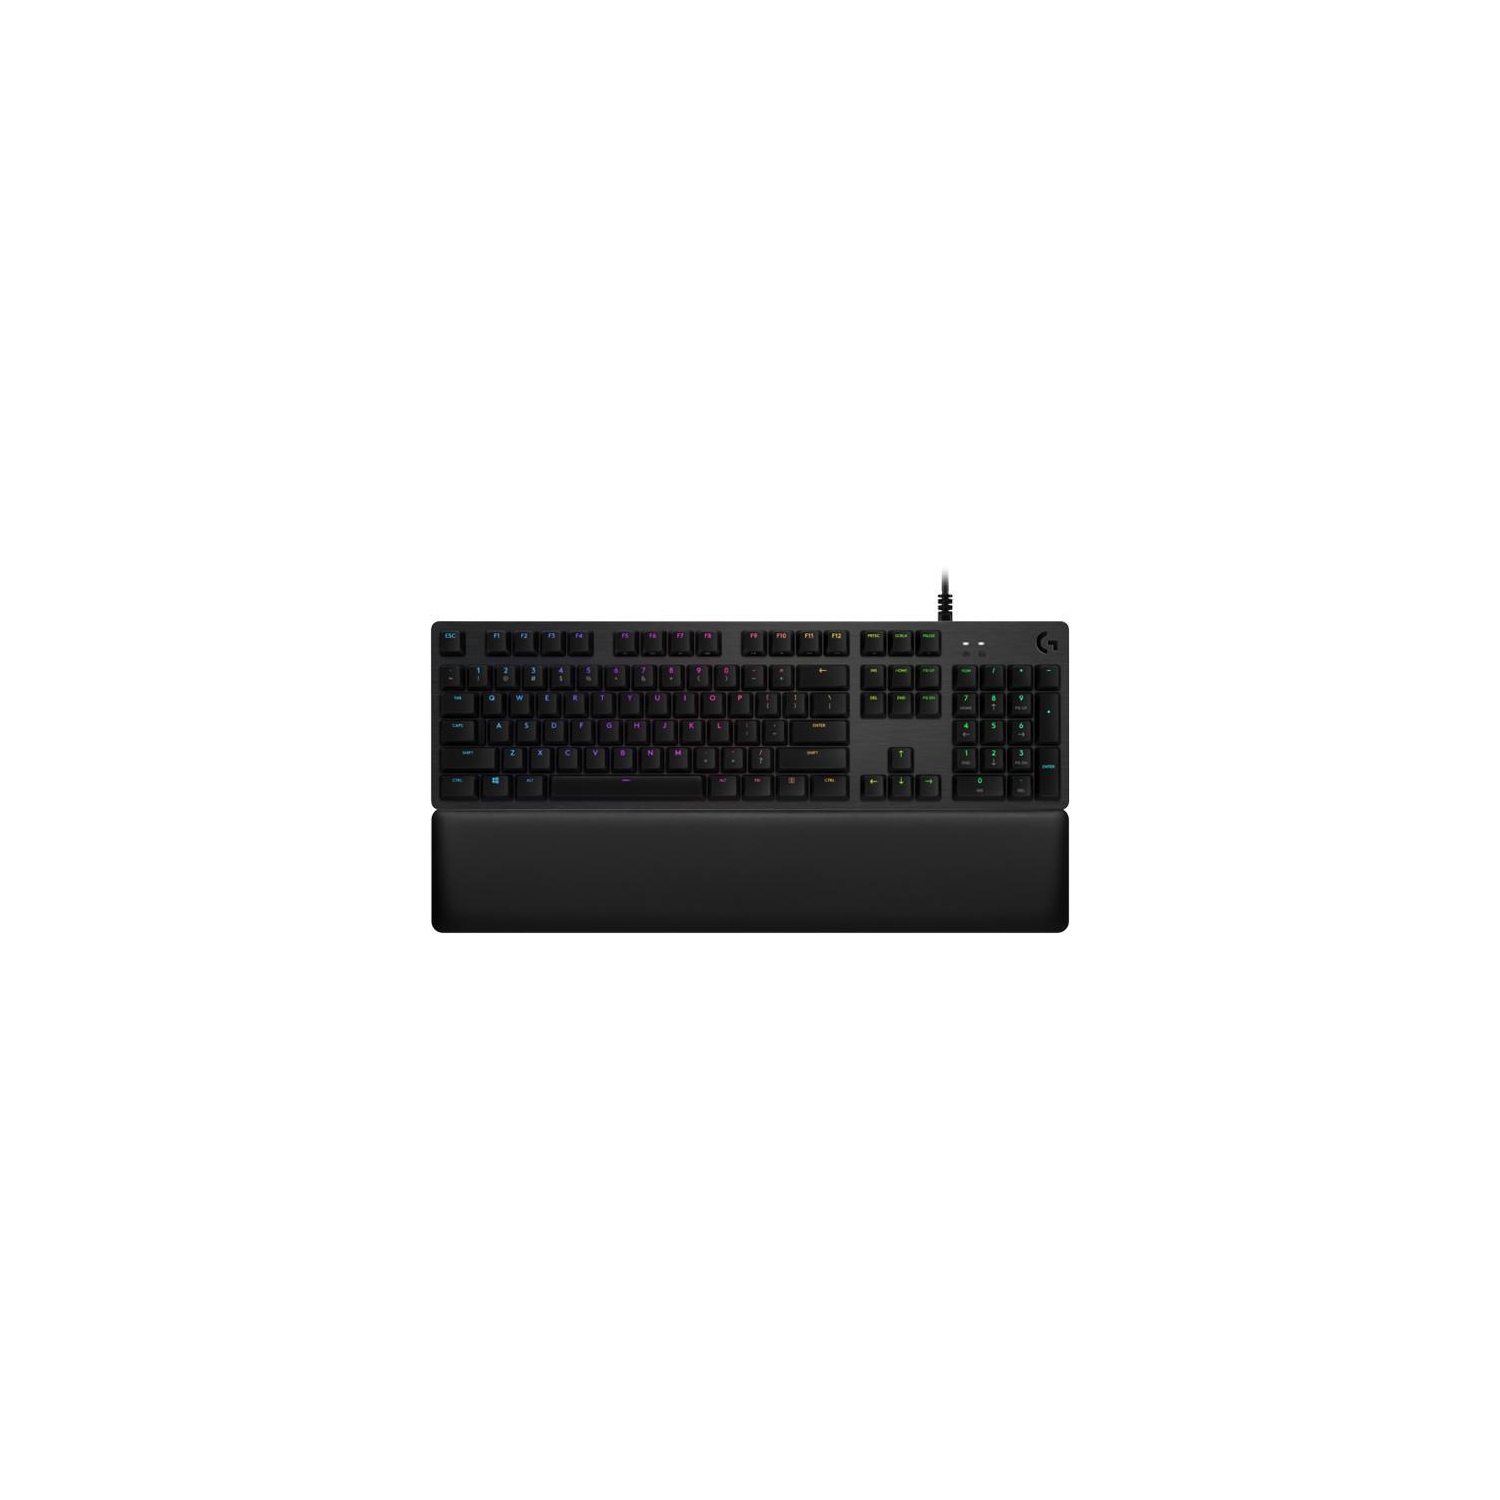 GAMING KEYBOARD Logitech 920-009332 G513 LIGHTSYNC RGB Mechanical Gaming Keyboard